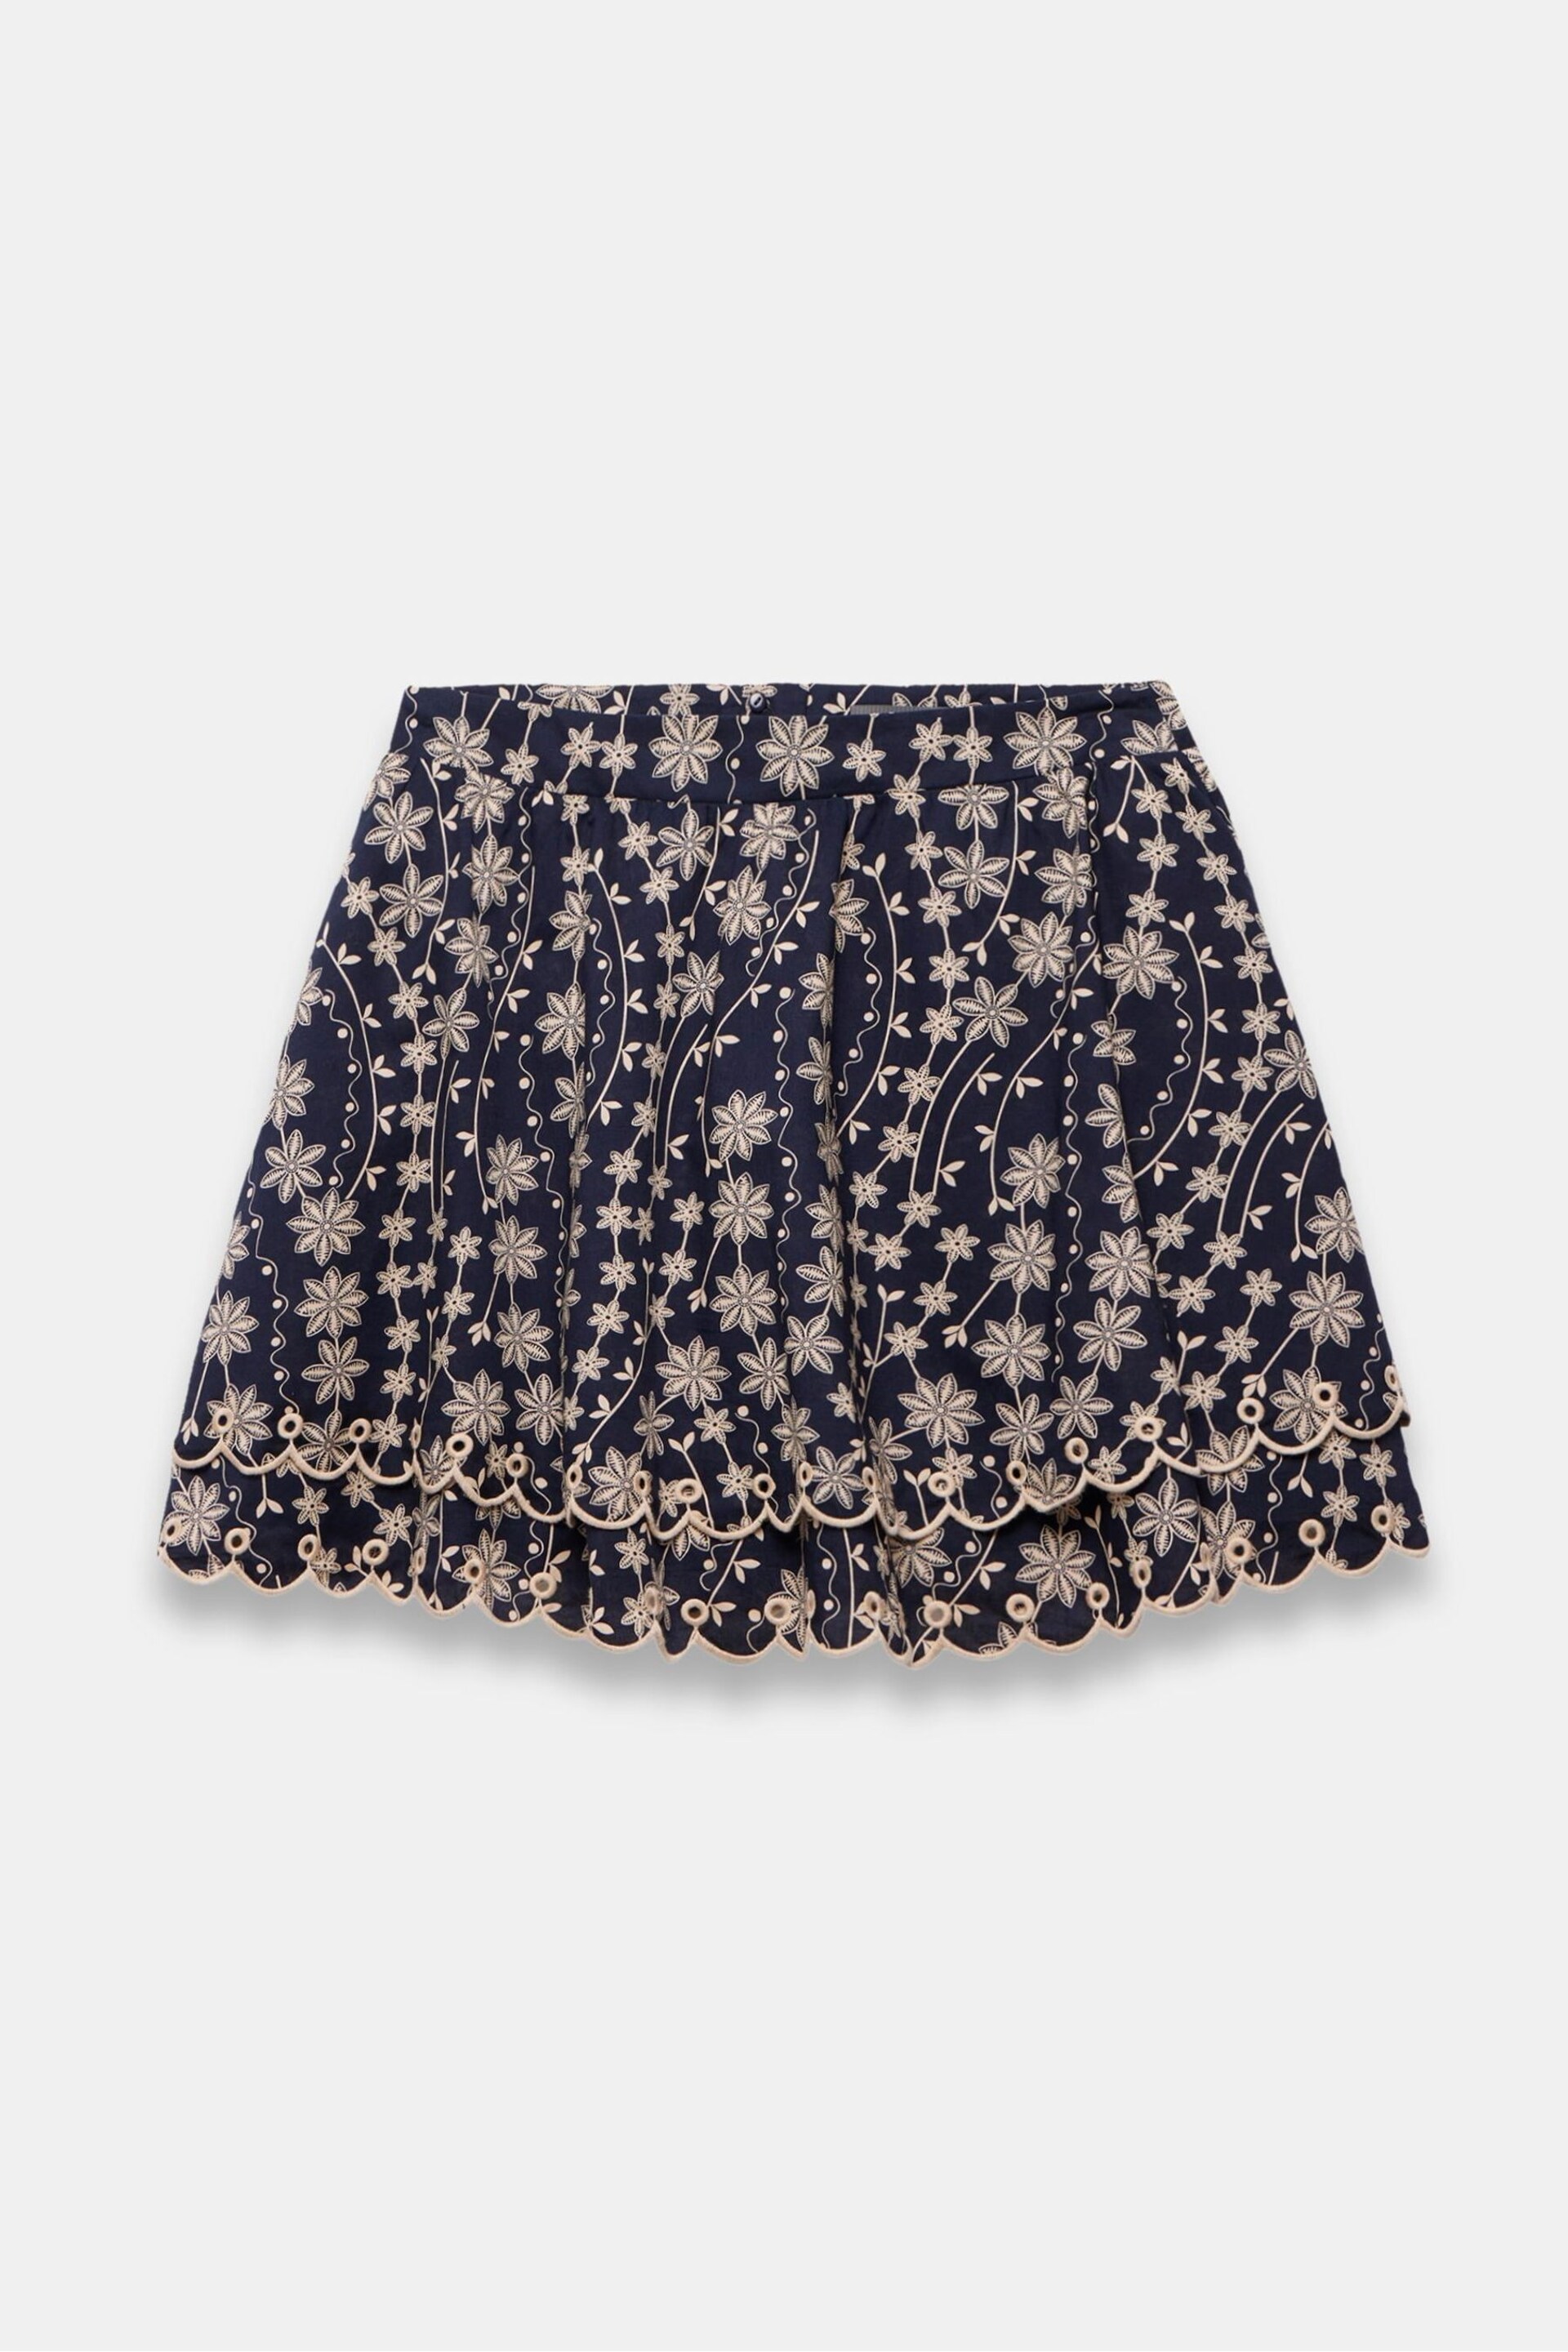 Mint Velvet Blue Cotton Mini Skirt - Image 3 of 4